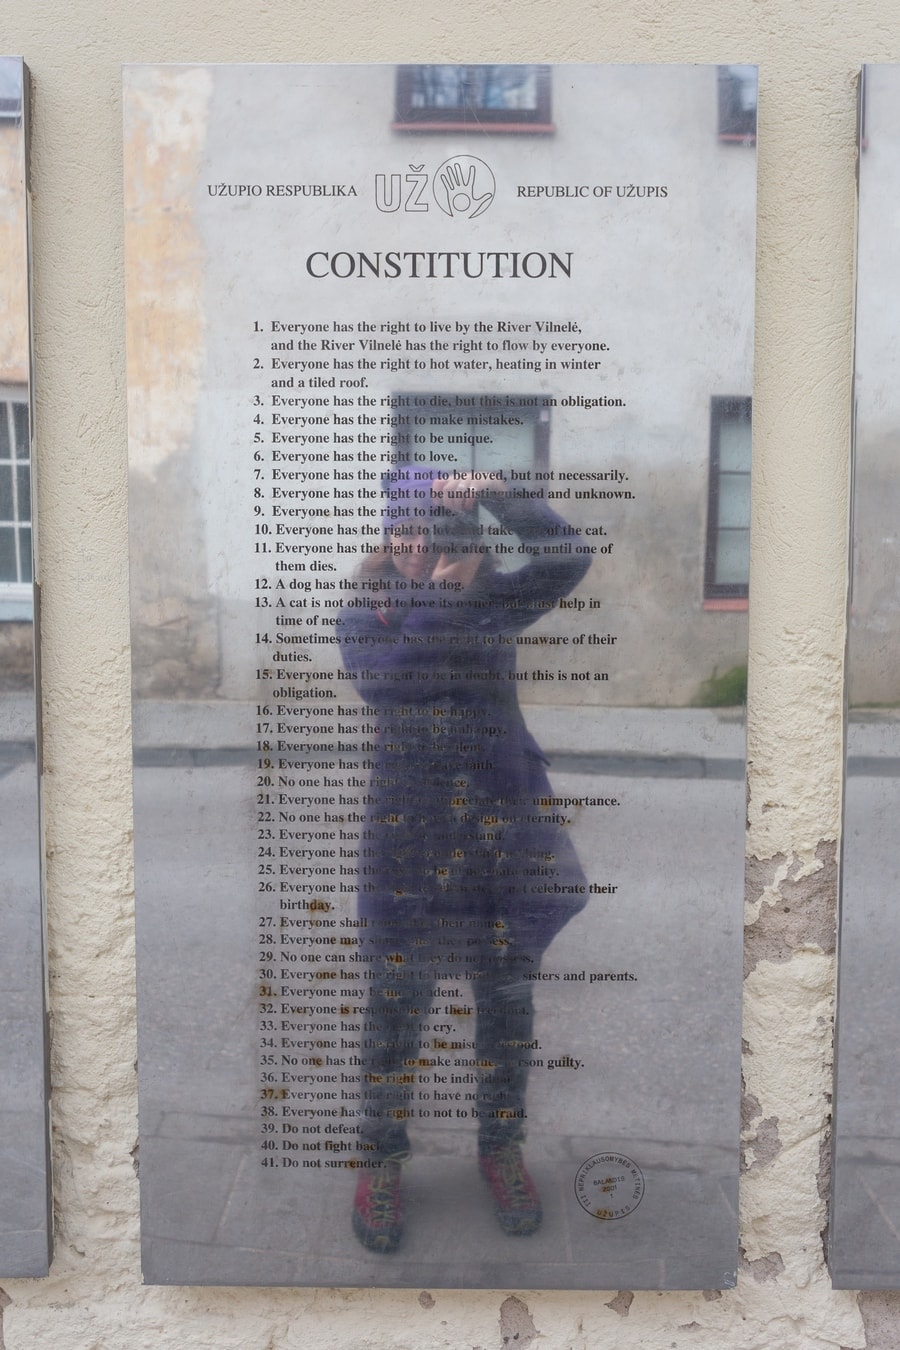 The Republic of Užupis Constitution